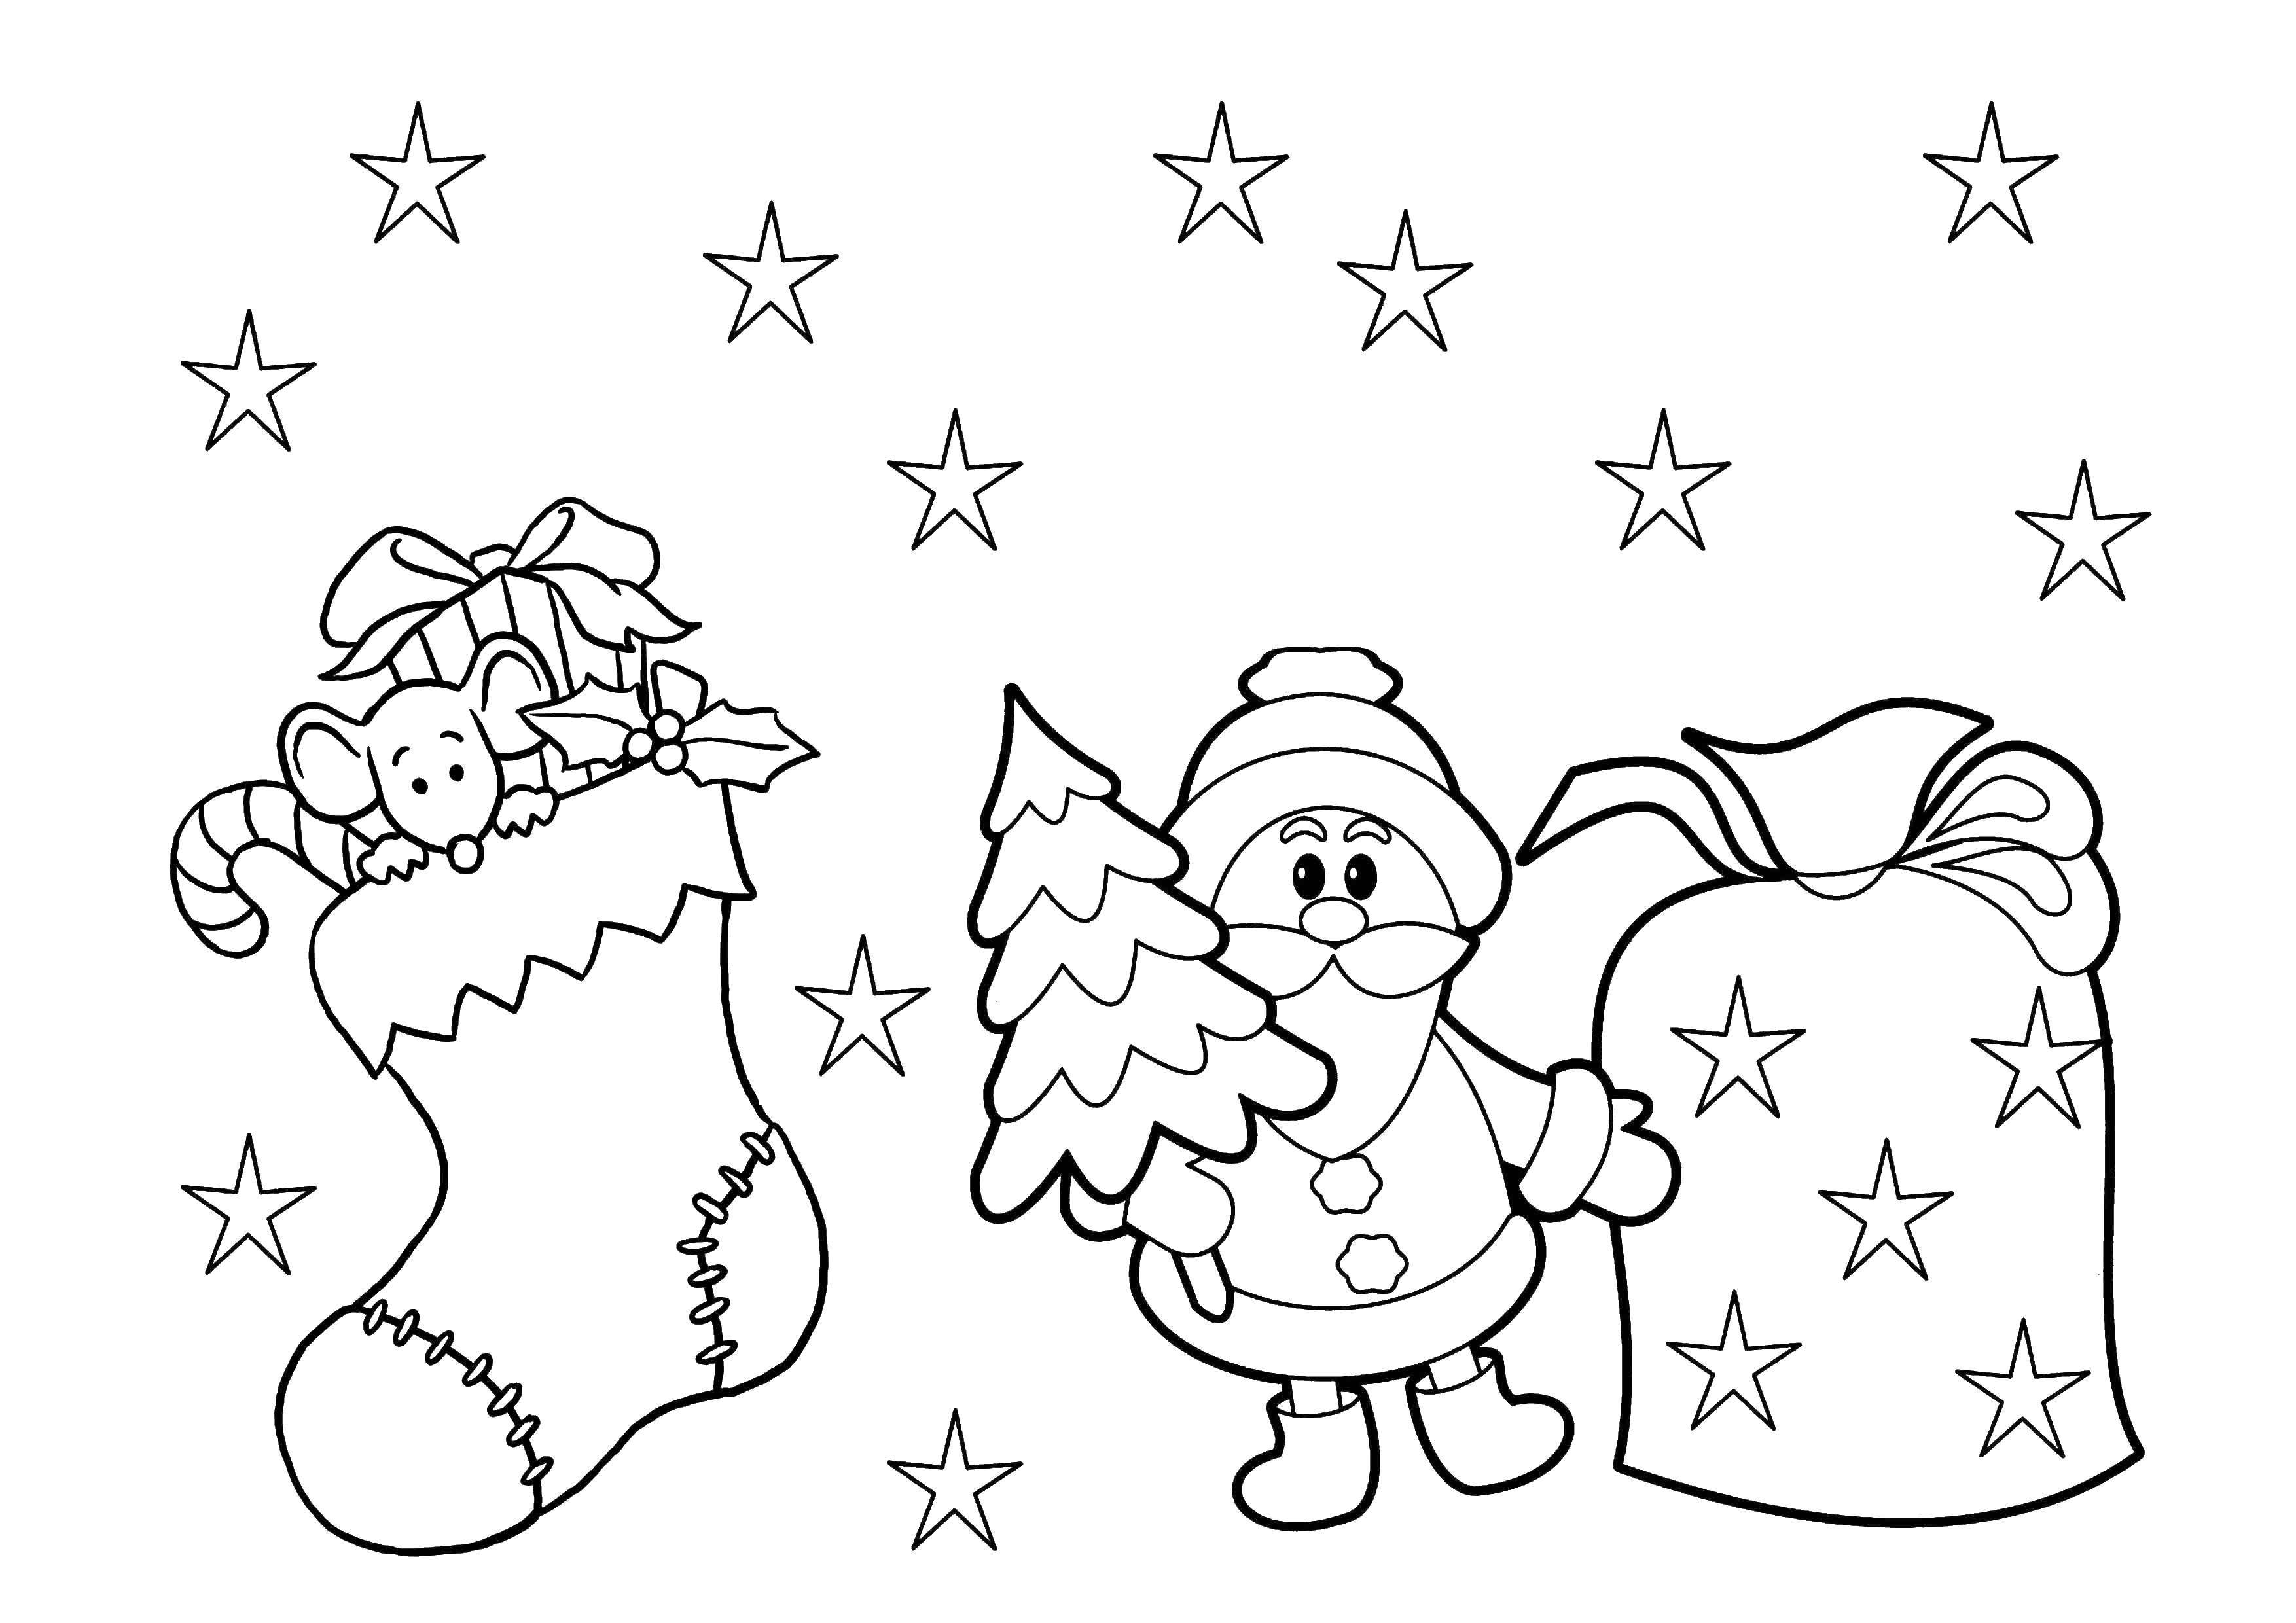 Coloring Santa Claus and bag of gifts. Category Christmas. Tags:  Santa Claus, bag, sock, toys.